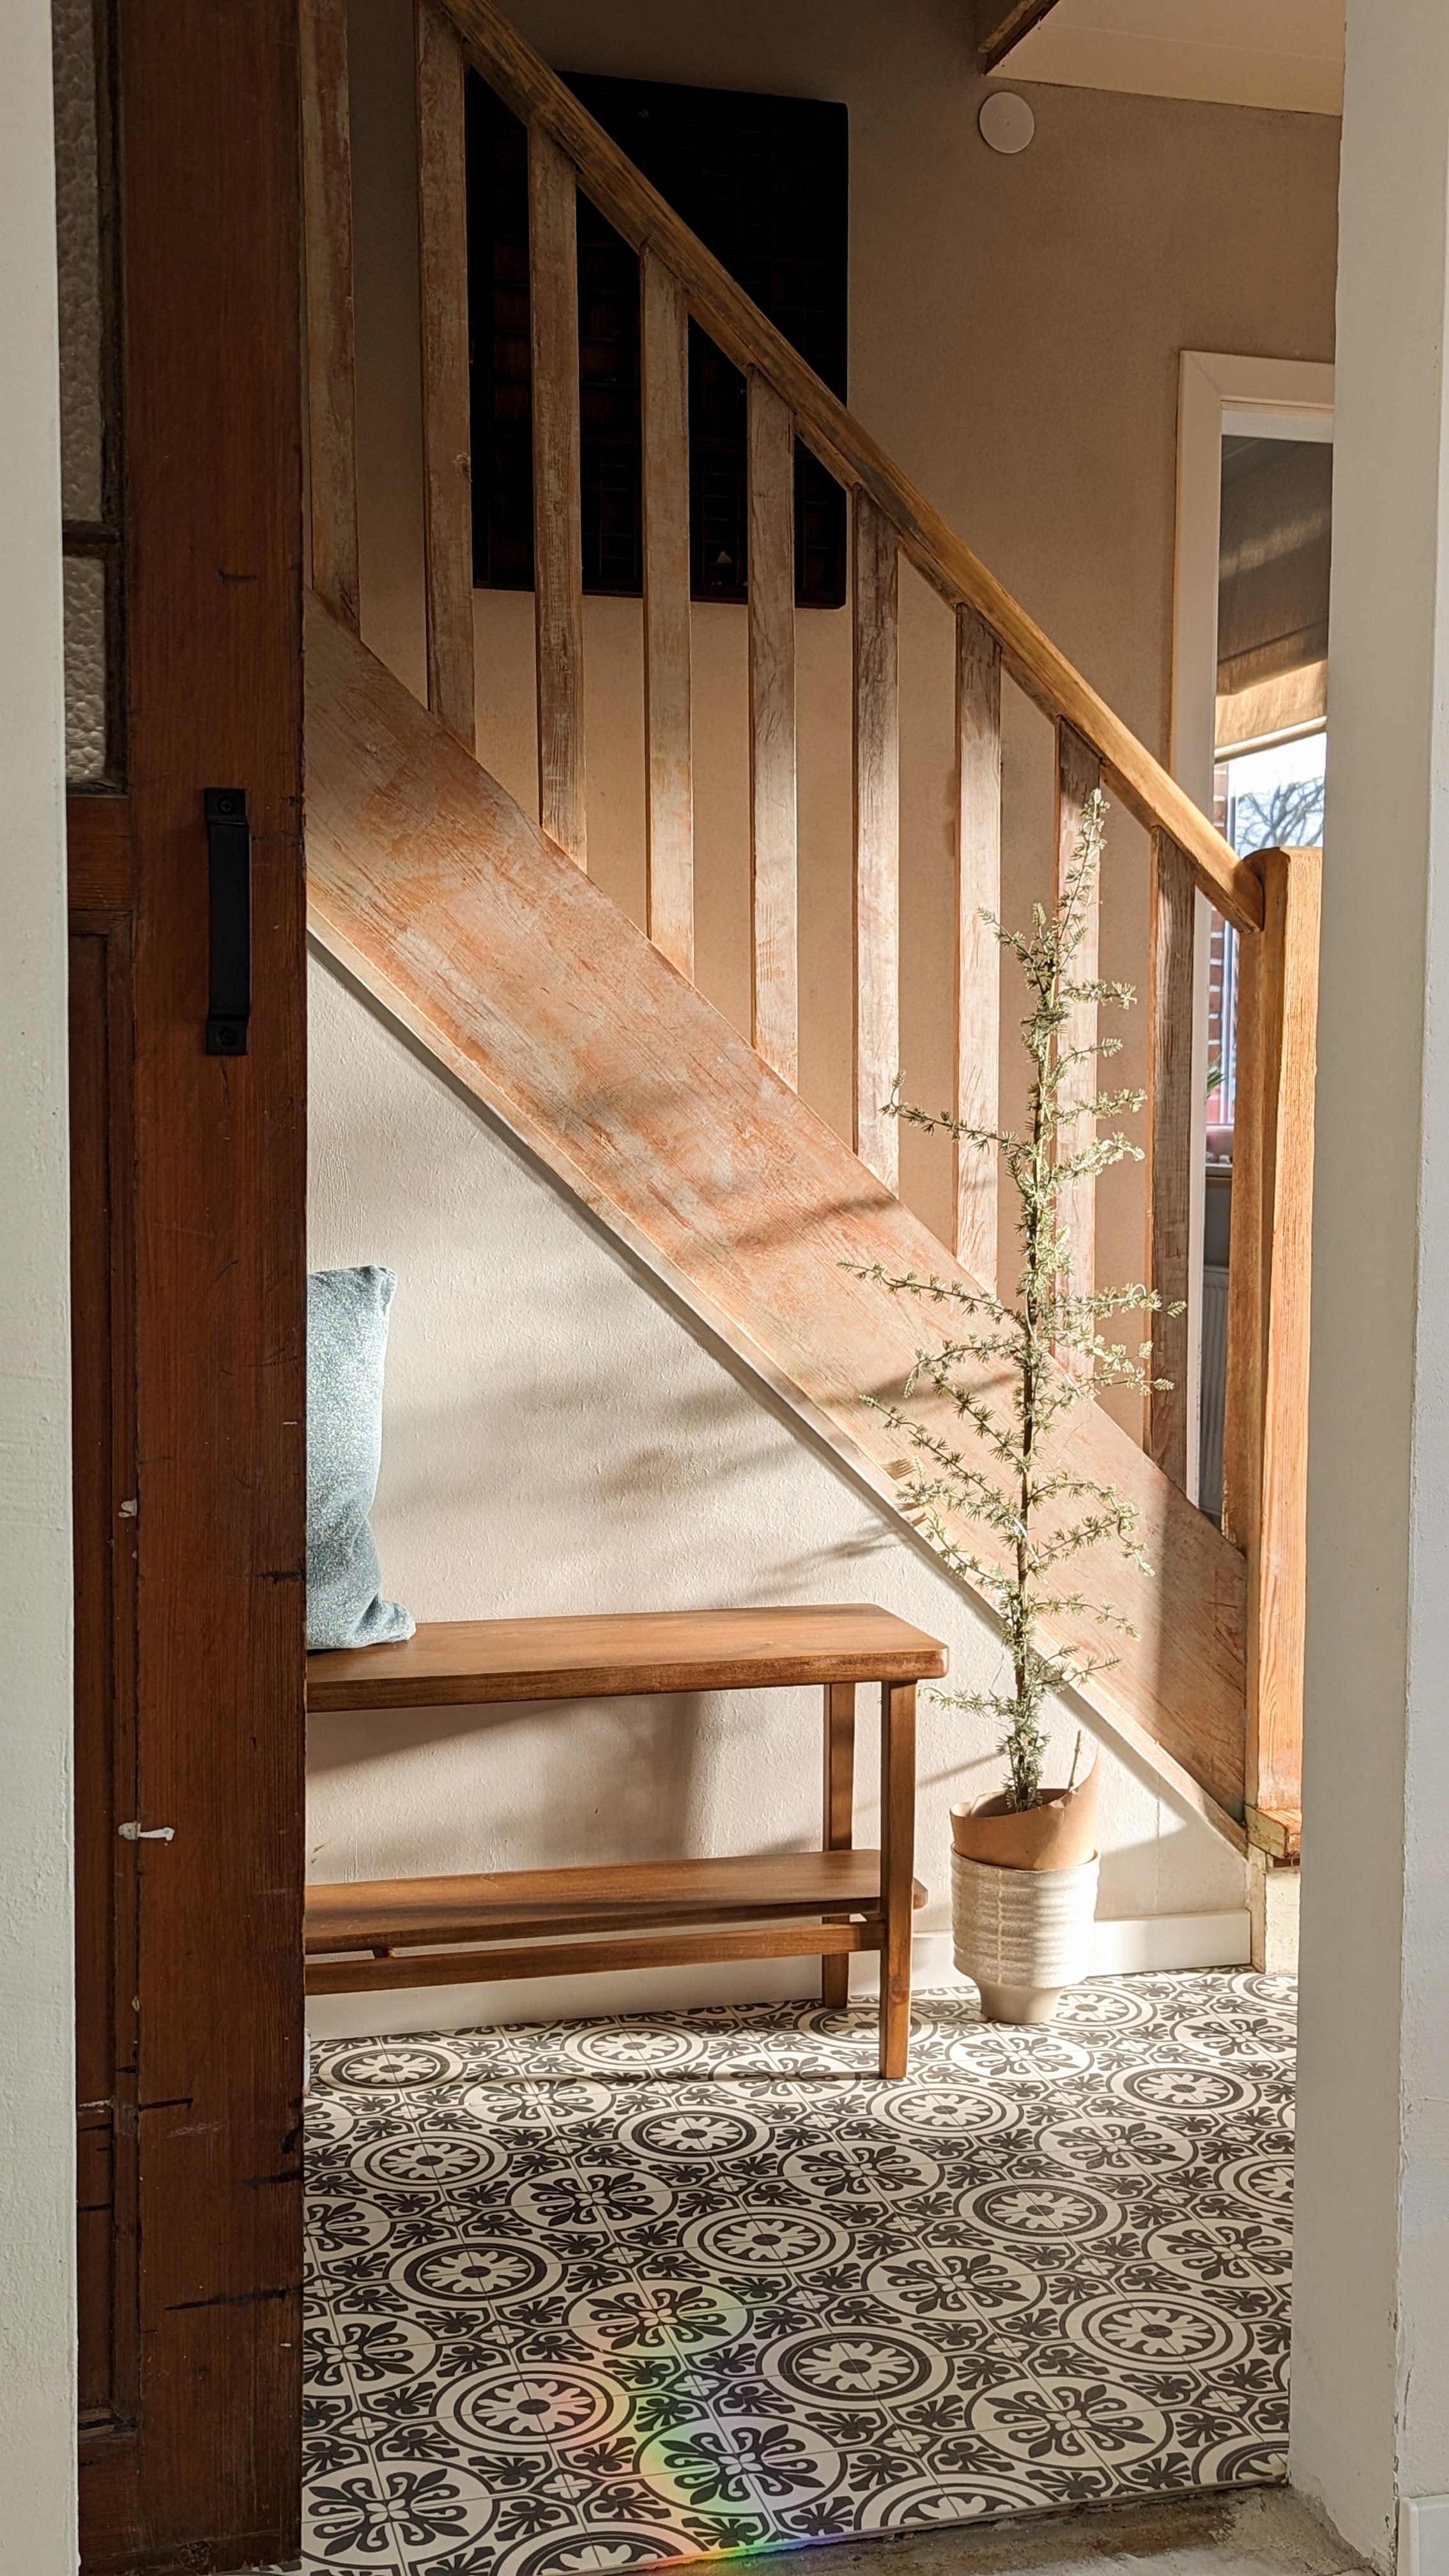 Treppe und Licht!

#treppe #treppenrenovierung #altbau #altbauliebe #holztreppe #flur #eingangsbereich #hallway 